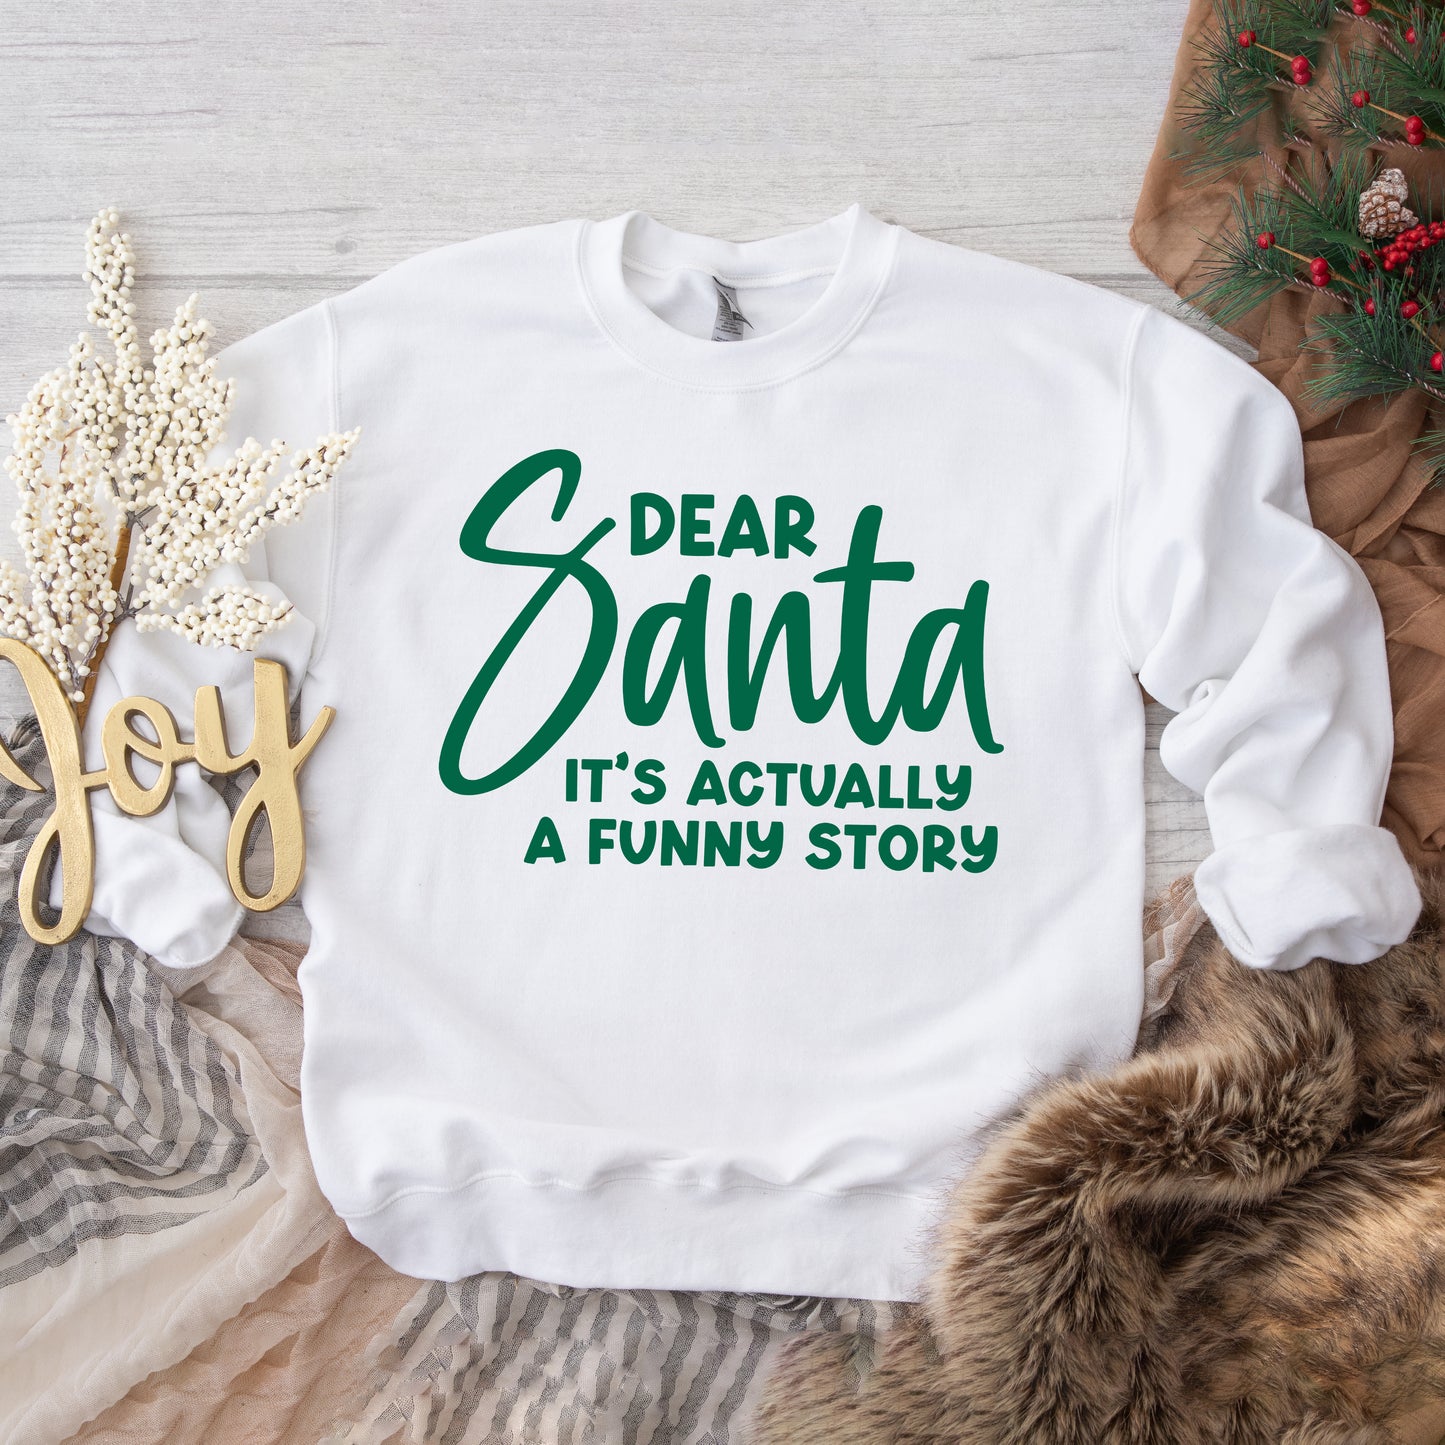 Dear Santa It's A Funny Story | Sweatshirt